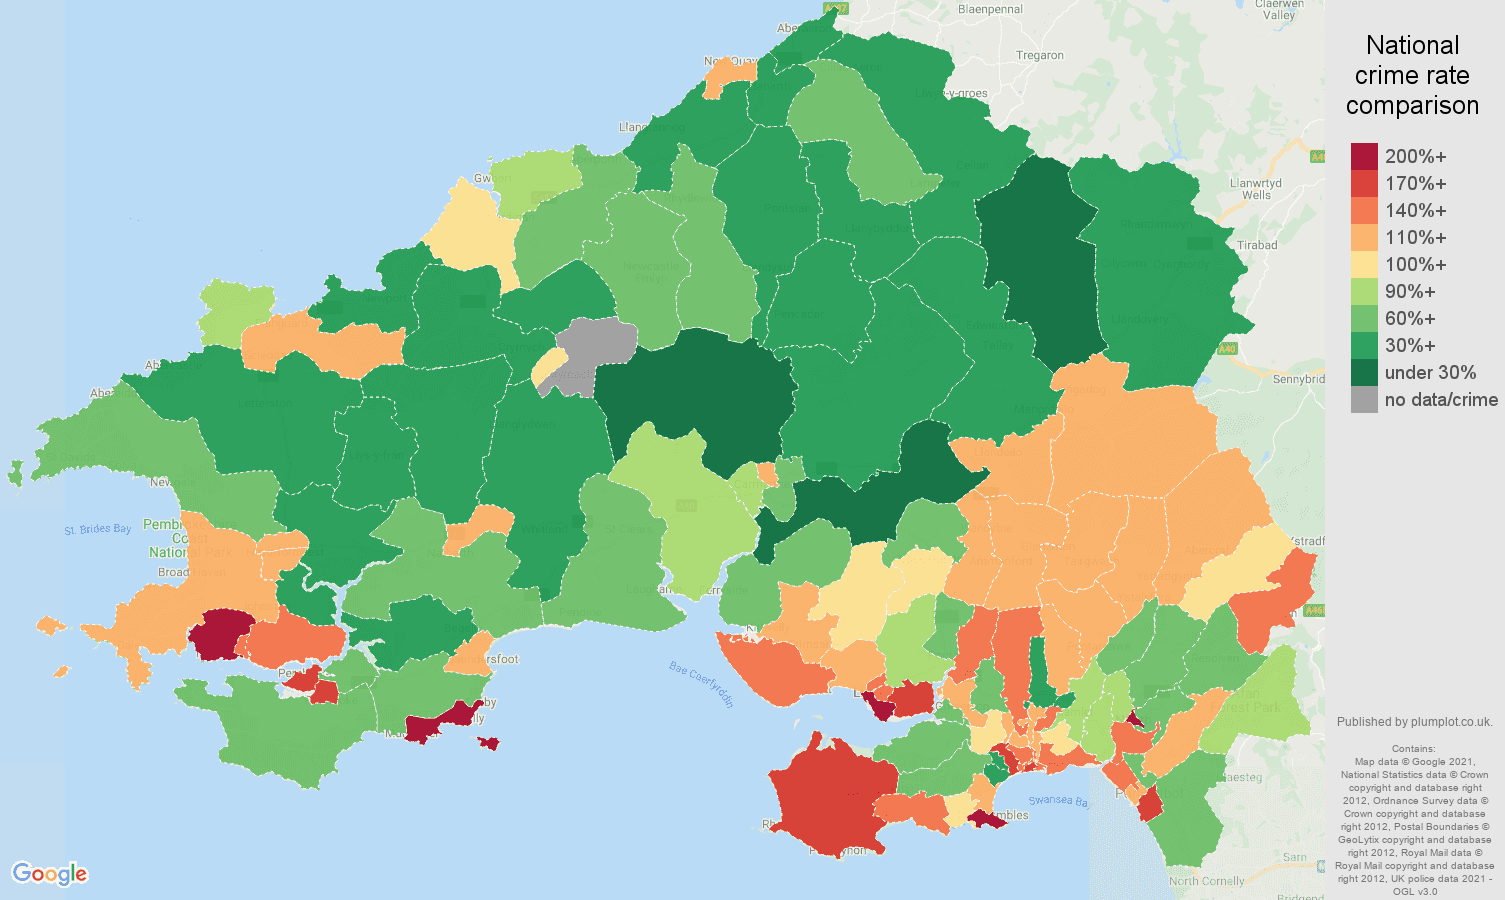 Swansea antisocial behaviour crime rate comparison map